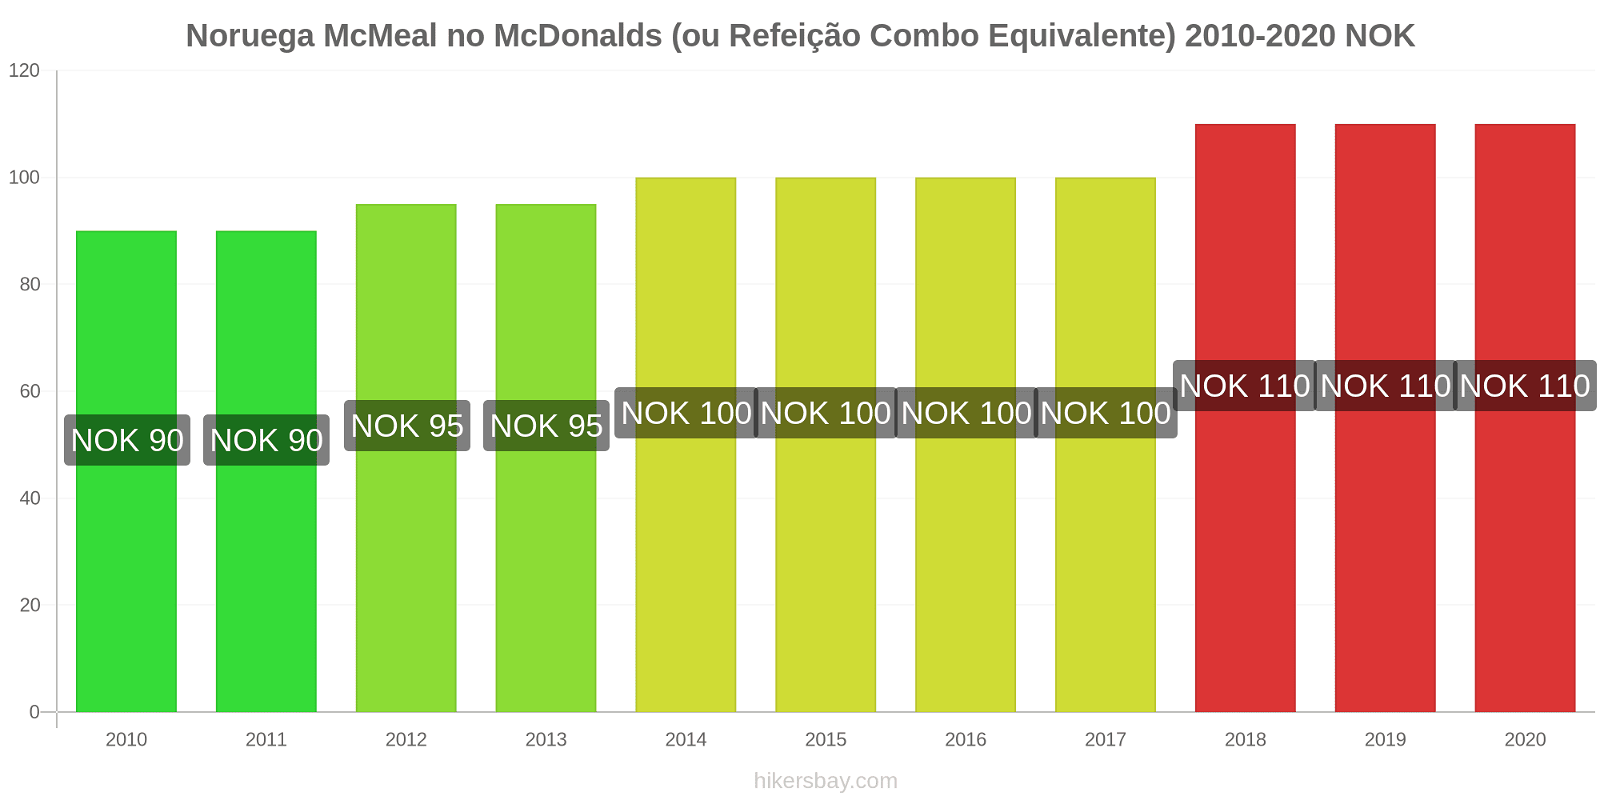 Noruega variação de preço McMeal no McDonald ' s (ou refeição Combo equivalente) hikersbay.com